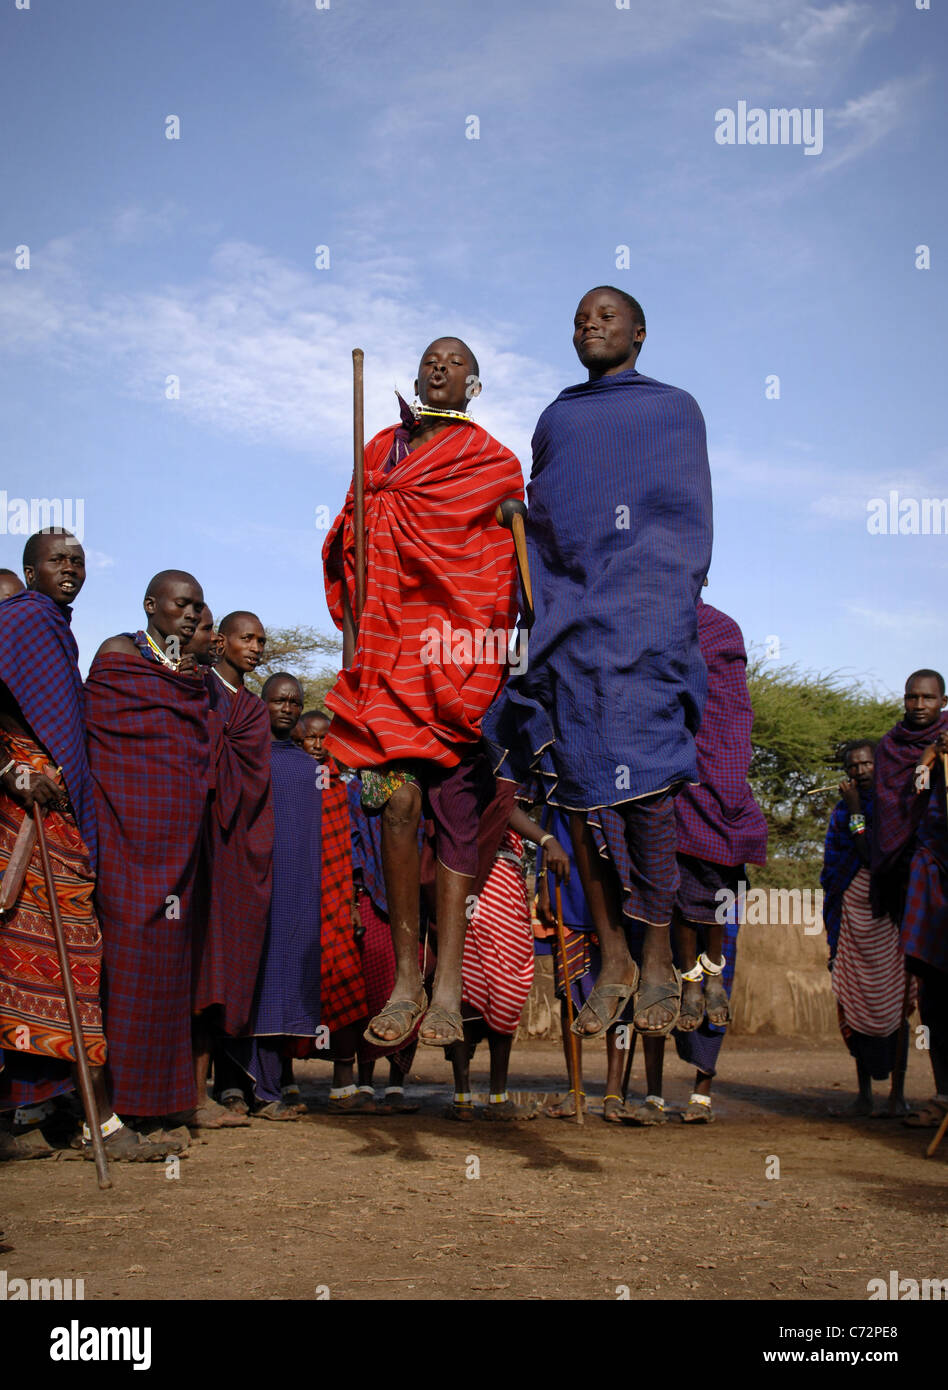 Afrique.La Tanzanie. 5 mars 2009. Village Massaï. La scène de danse de guerrier Masai,Tanzanie, Afrique de l'Est. Banque D'Images